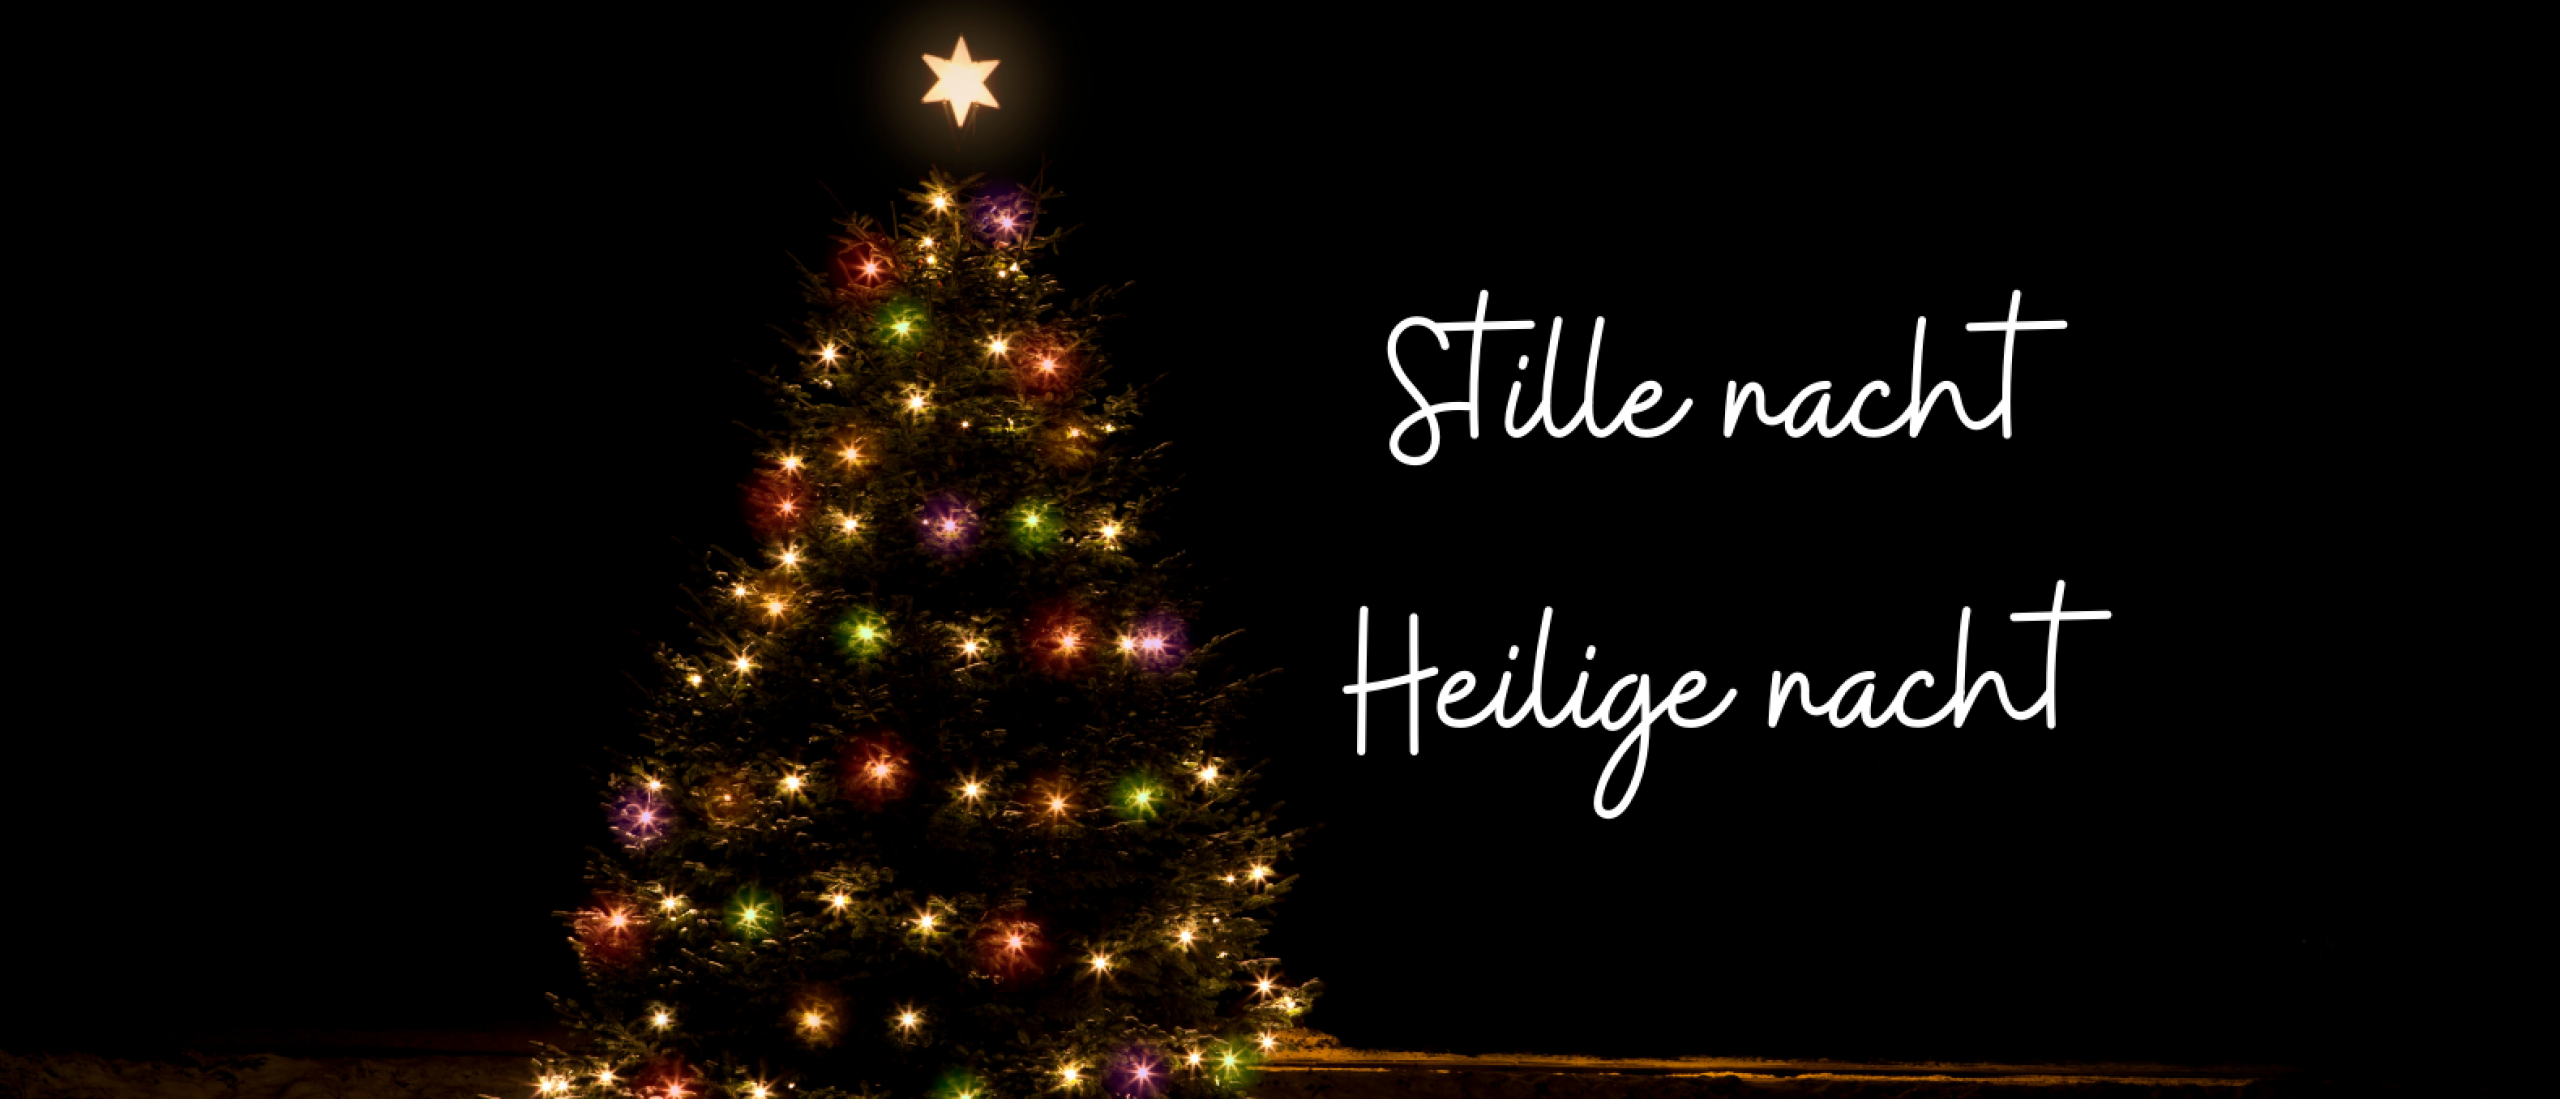 Stille nacht! Heilige nacht! Het beroemdste kerstlied uit Oostenrijk bestaat 204 jaar!